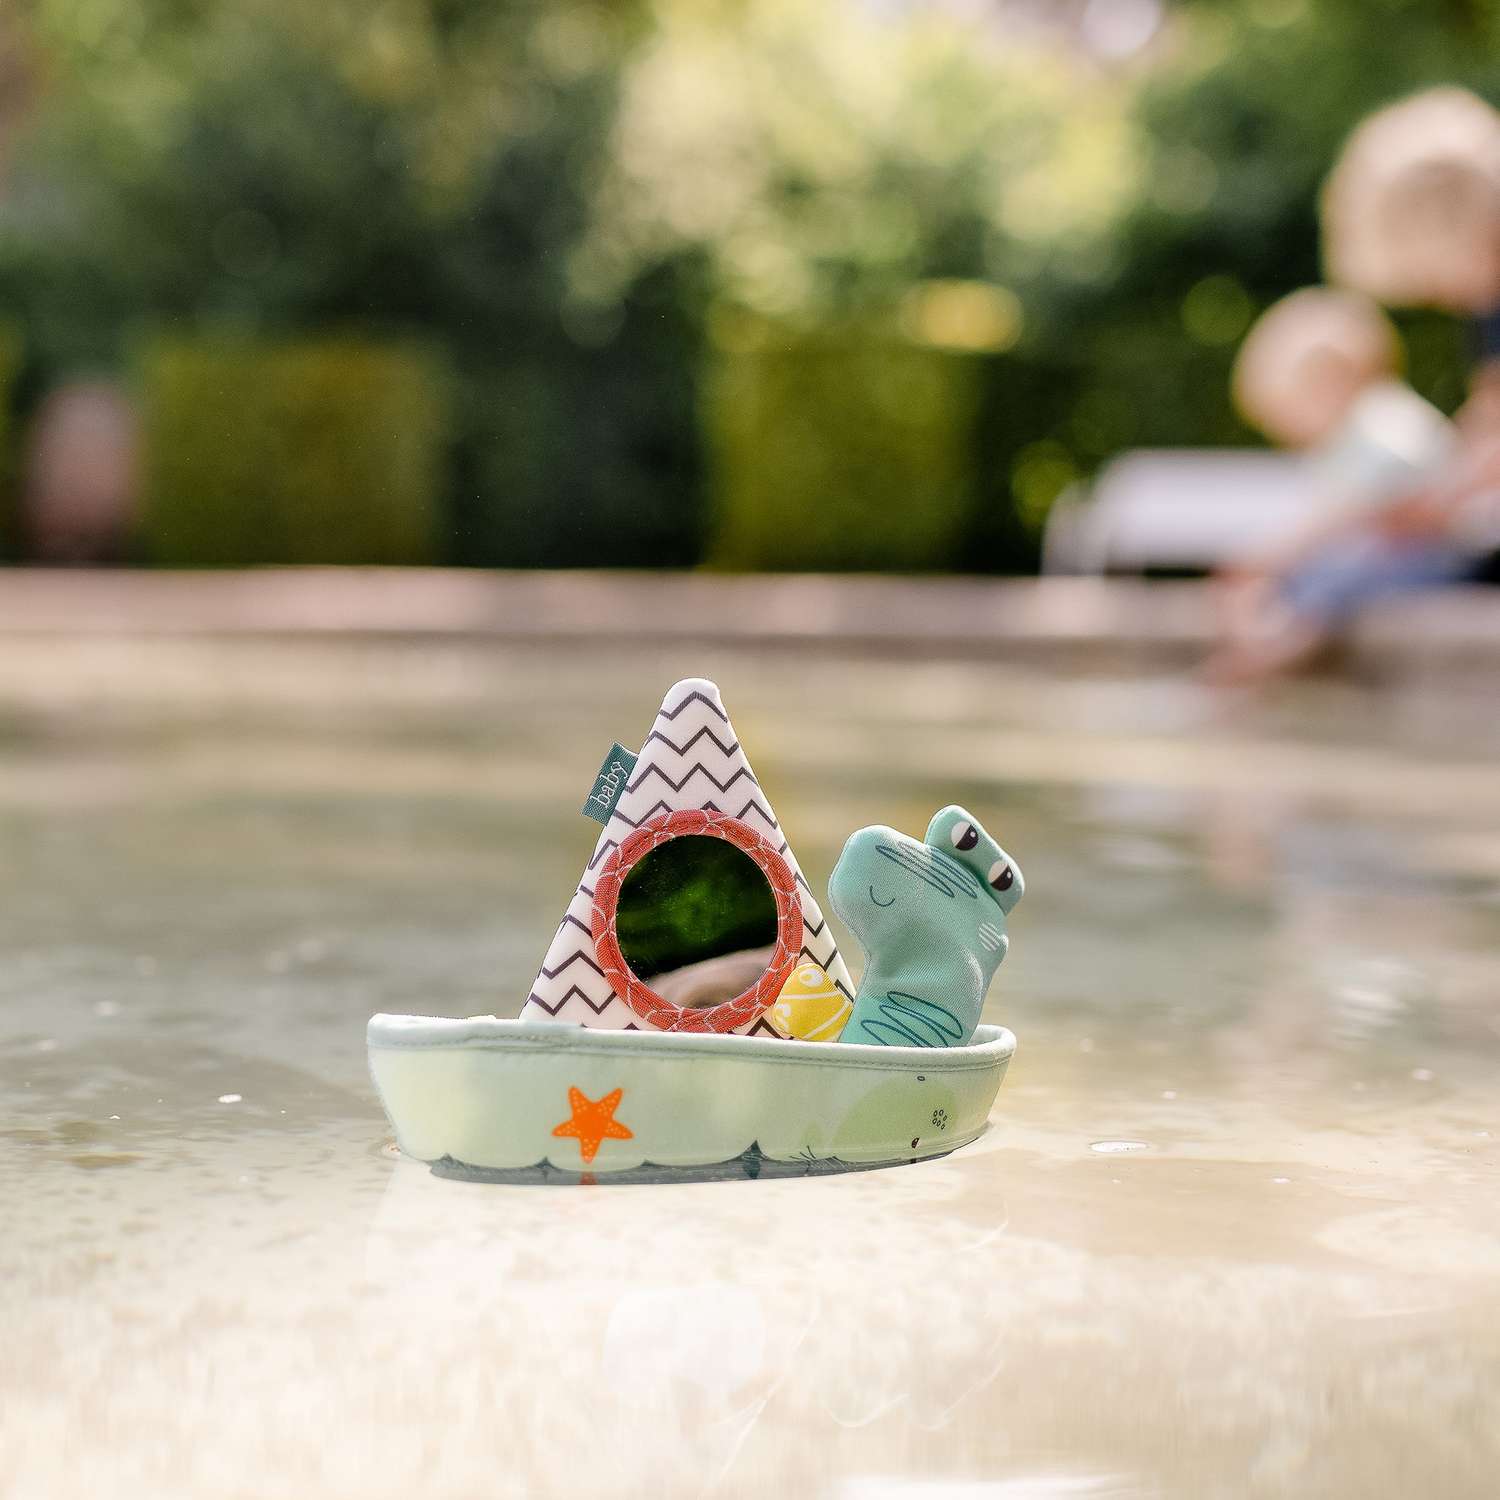 Игрушка для ванны FEHN Лодка и пальчиковая игрушка Крокодил - фото 10